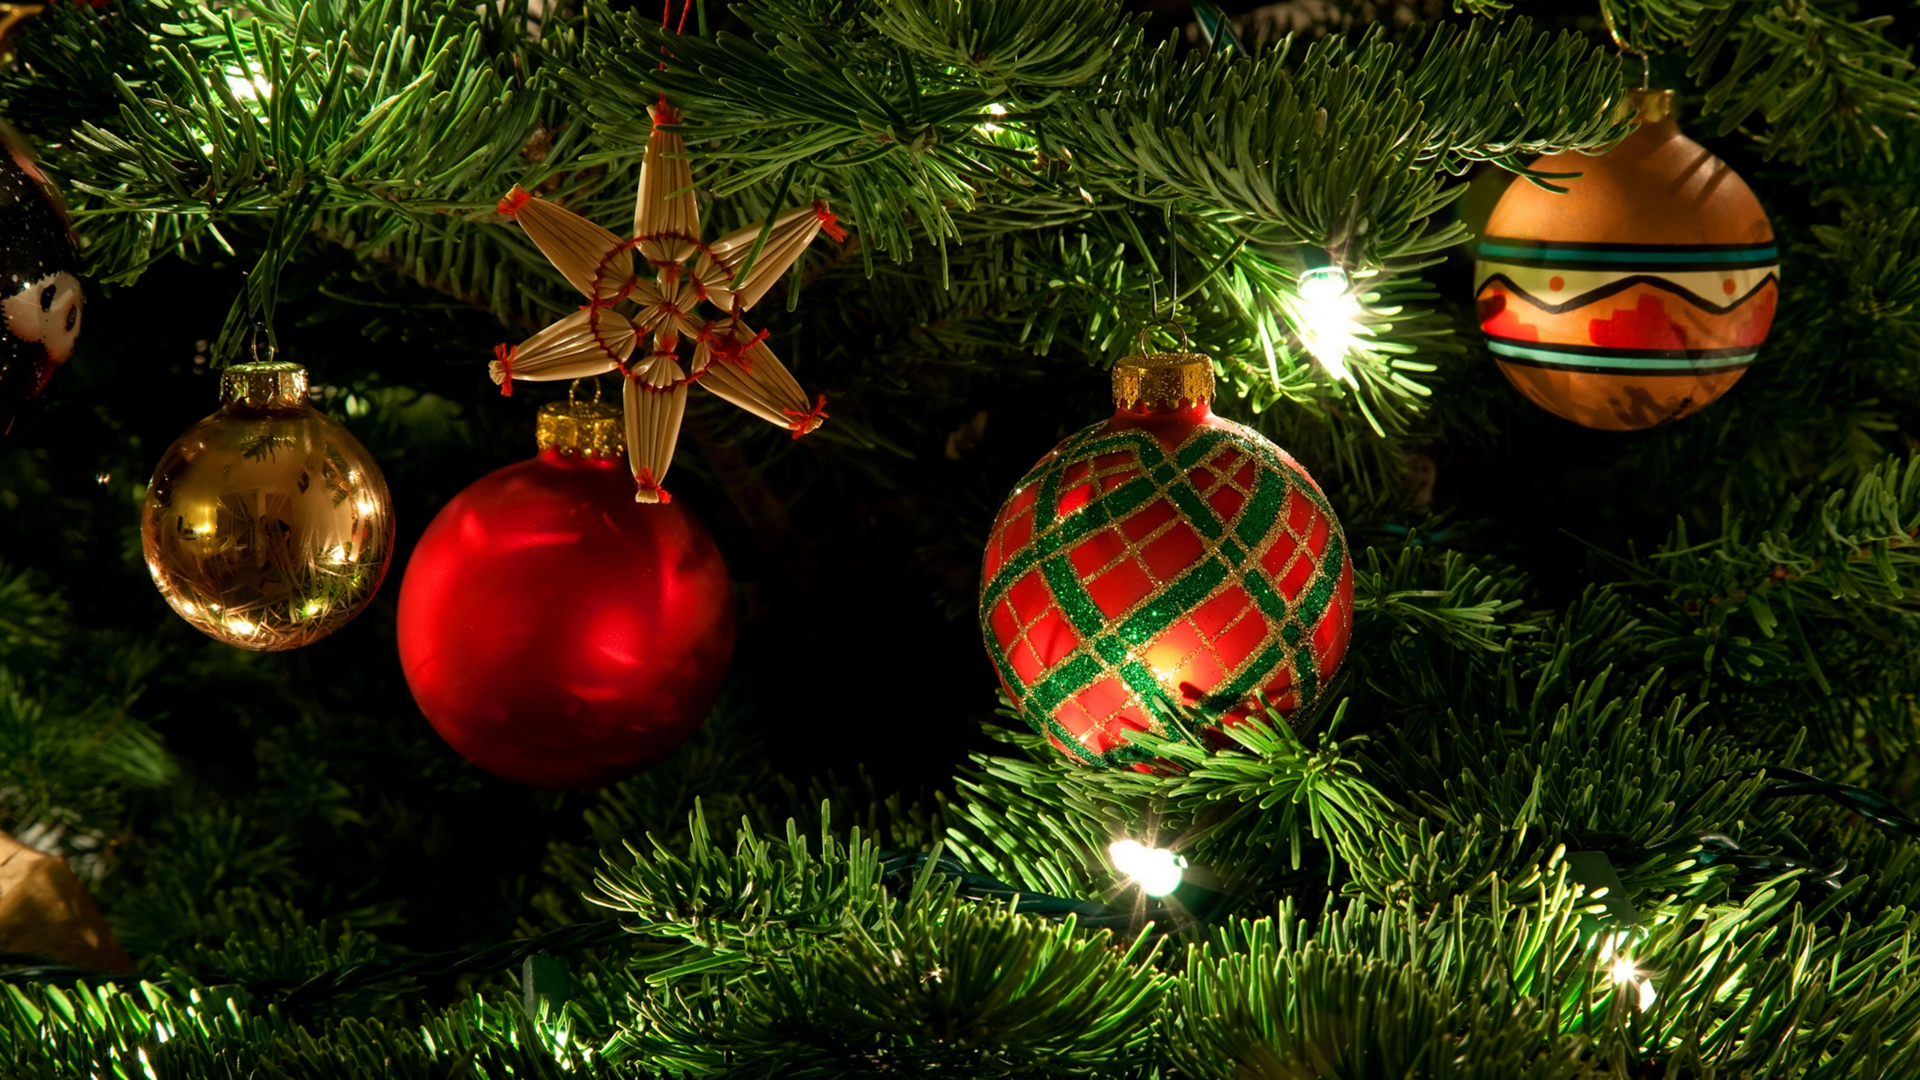 圣诞节那天, 圣诞节的装饰品, 圣诞节, 圣诞装饰, 圣诞树 壁纸 1920x1080 允许